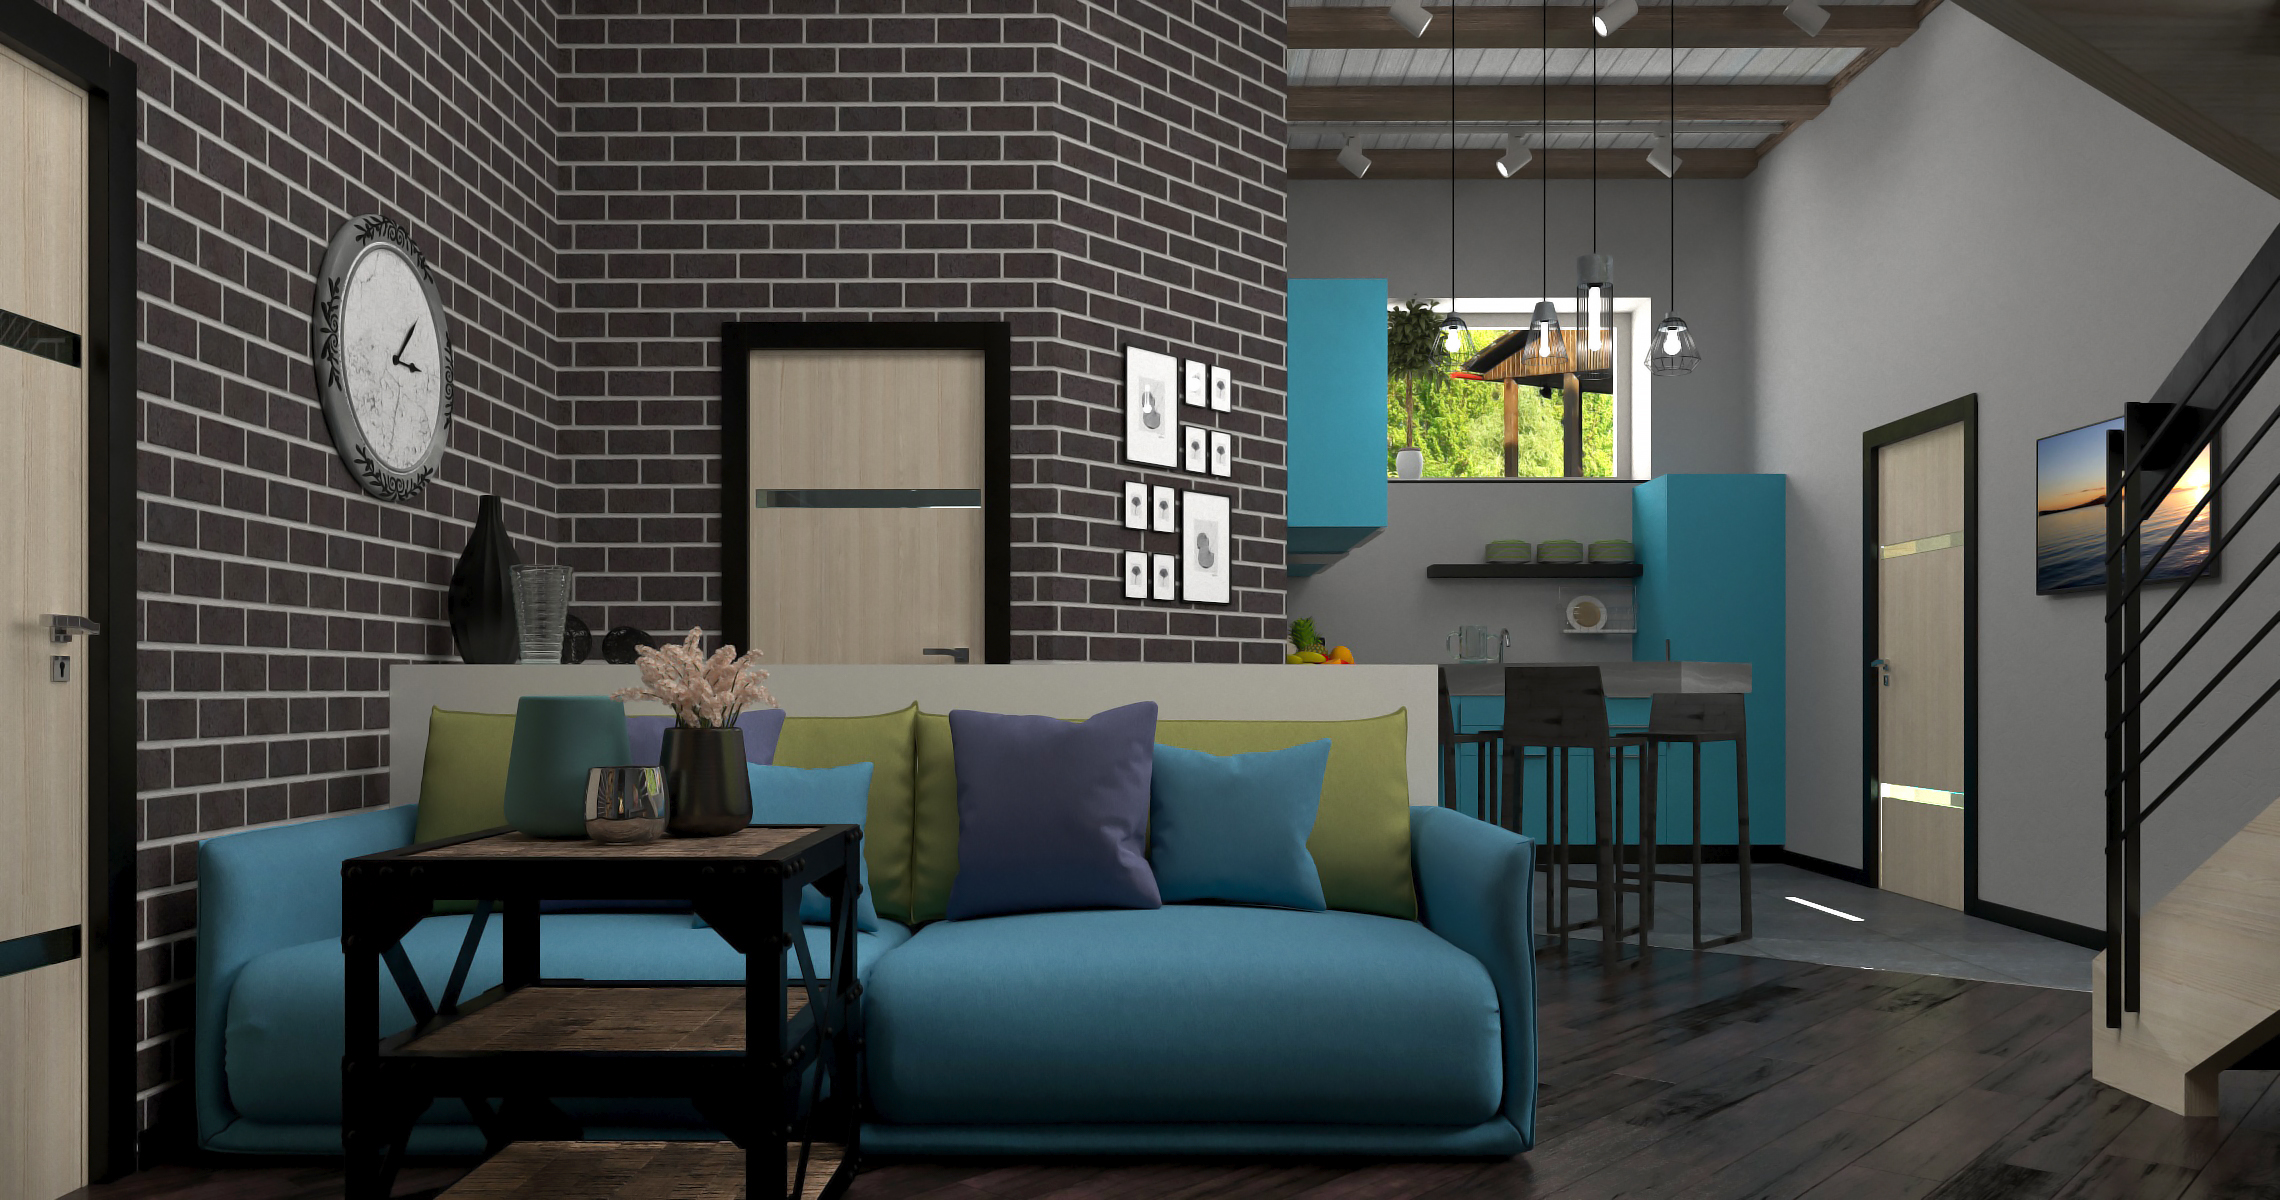 İç mutfak-oturma odası in 3d max corona render resim